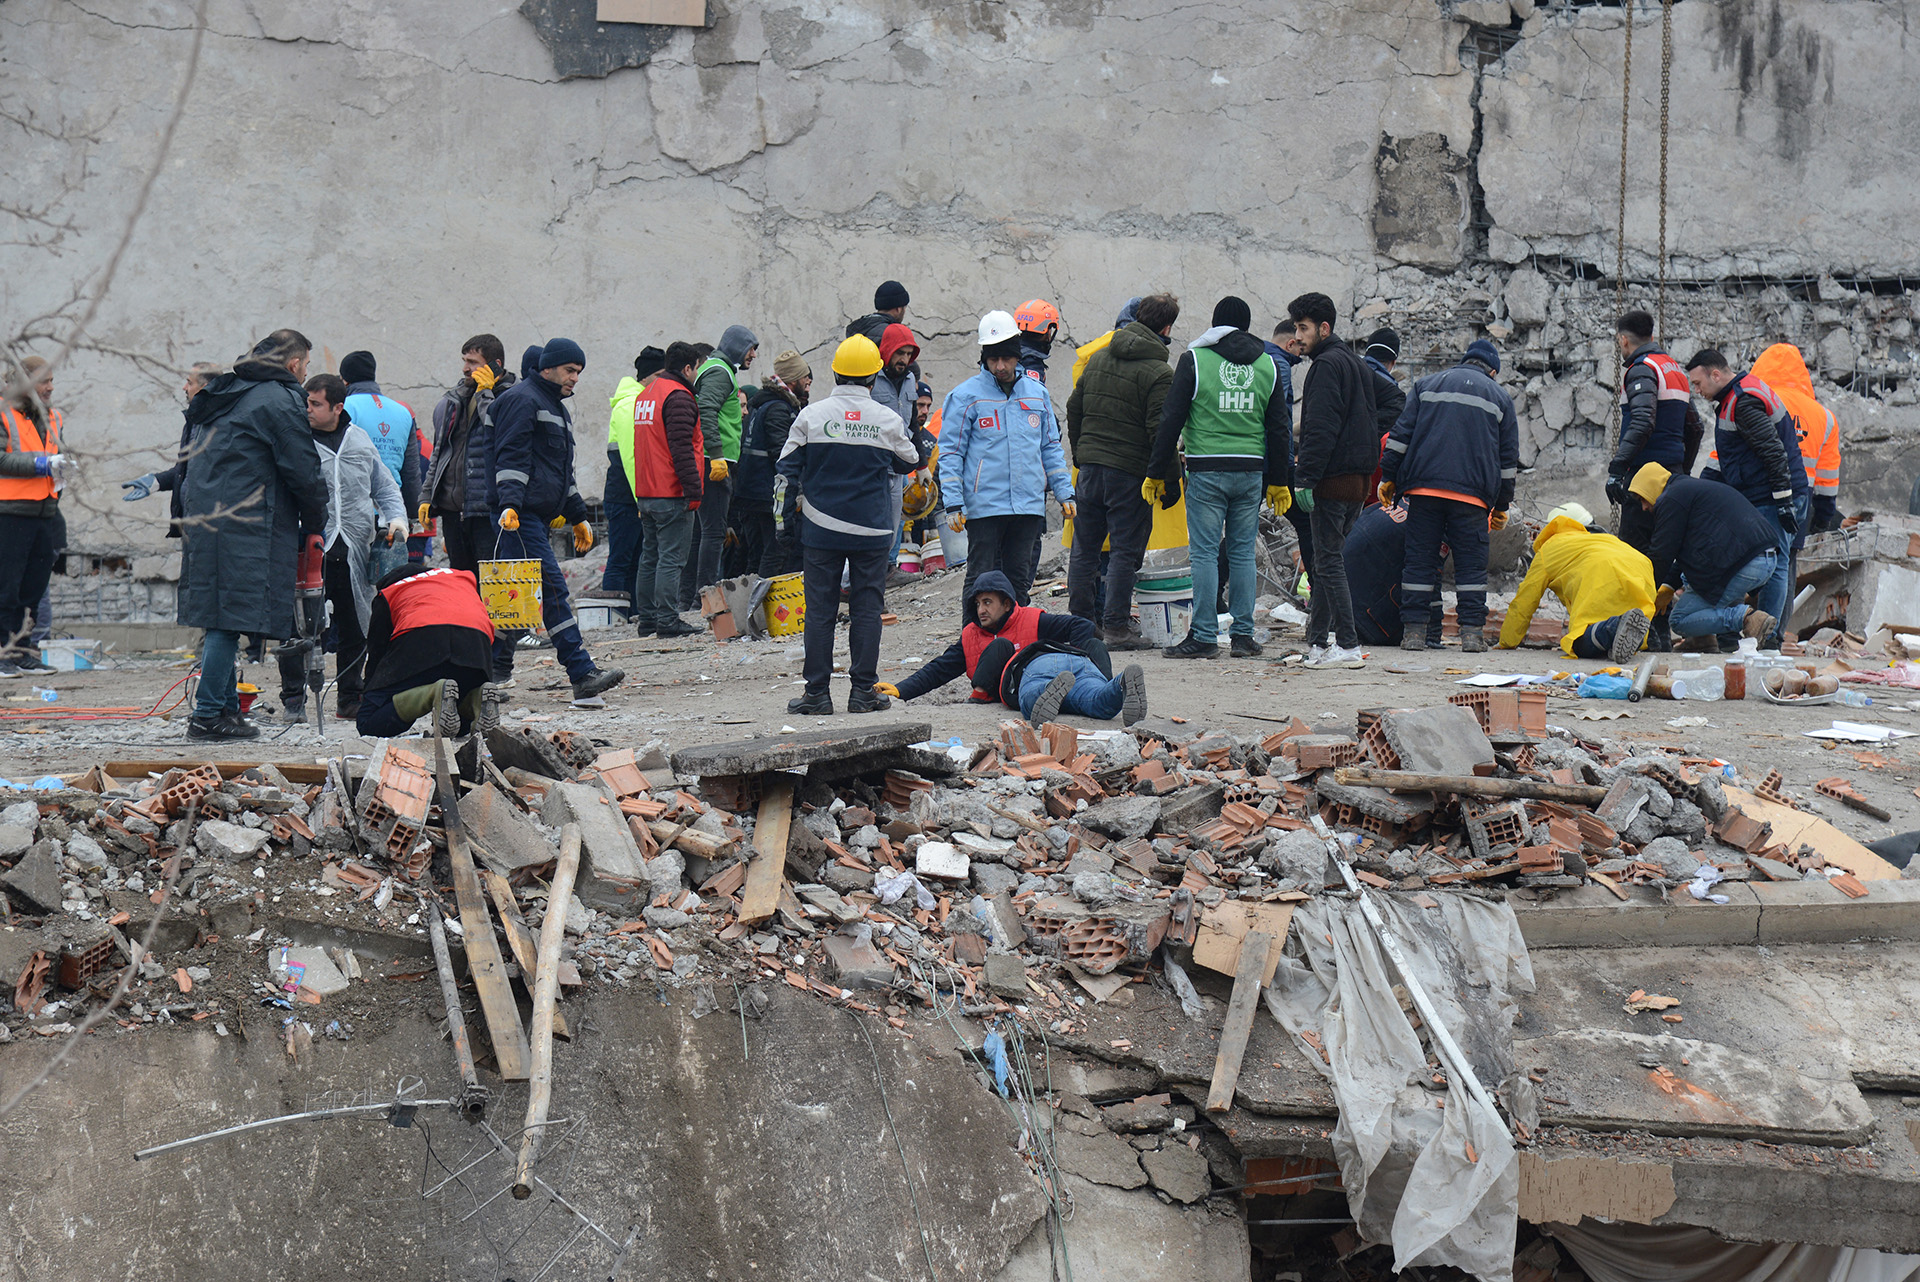 “A pesar de las condiciones no perdemos las esperanzas”: rescatistas israelíes participan del operativo de búsqueda tras el terremoto en Turquía